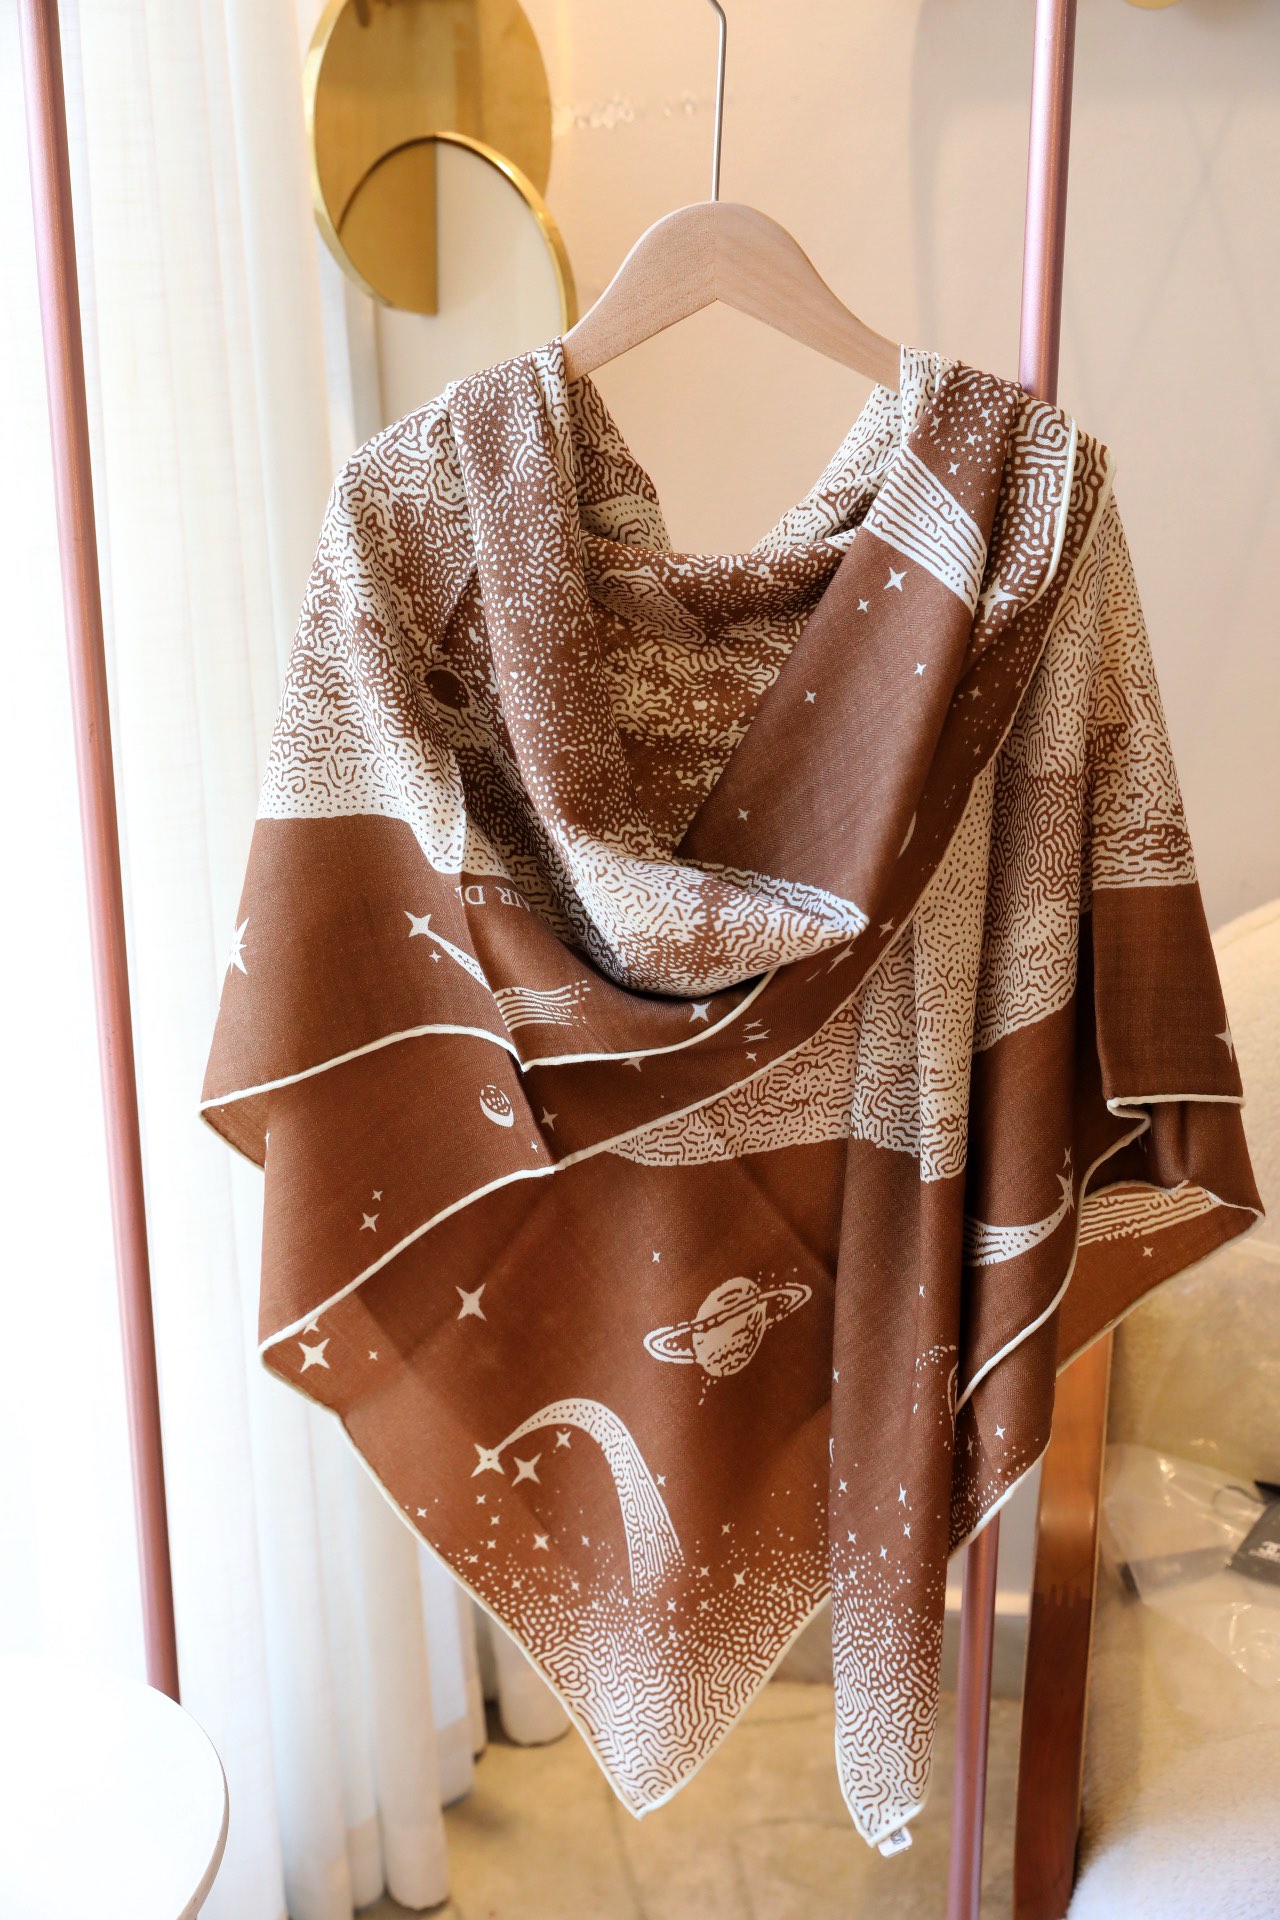 Bufandas de seda de cachemira Diseñadora de moda de moda de lujo Pashmina de alta calidad Bufandas calientes de invierno 140*140cm unisex casual de tendencia chal